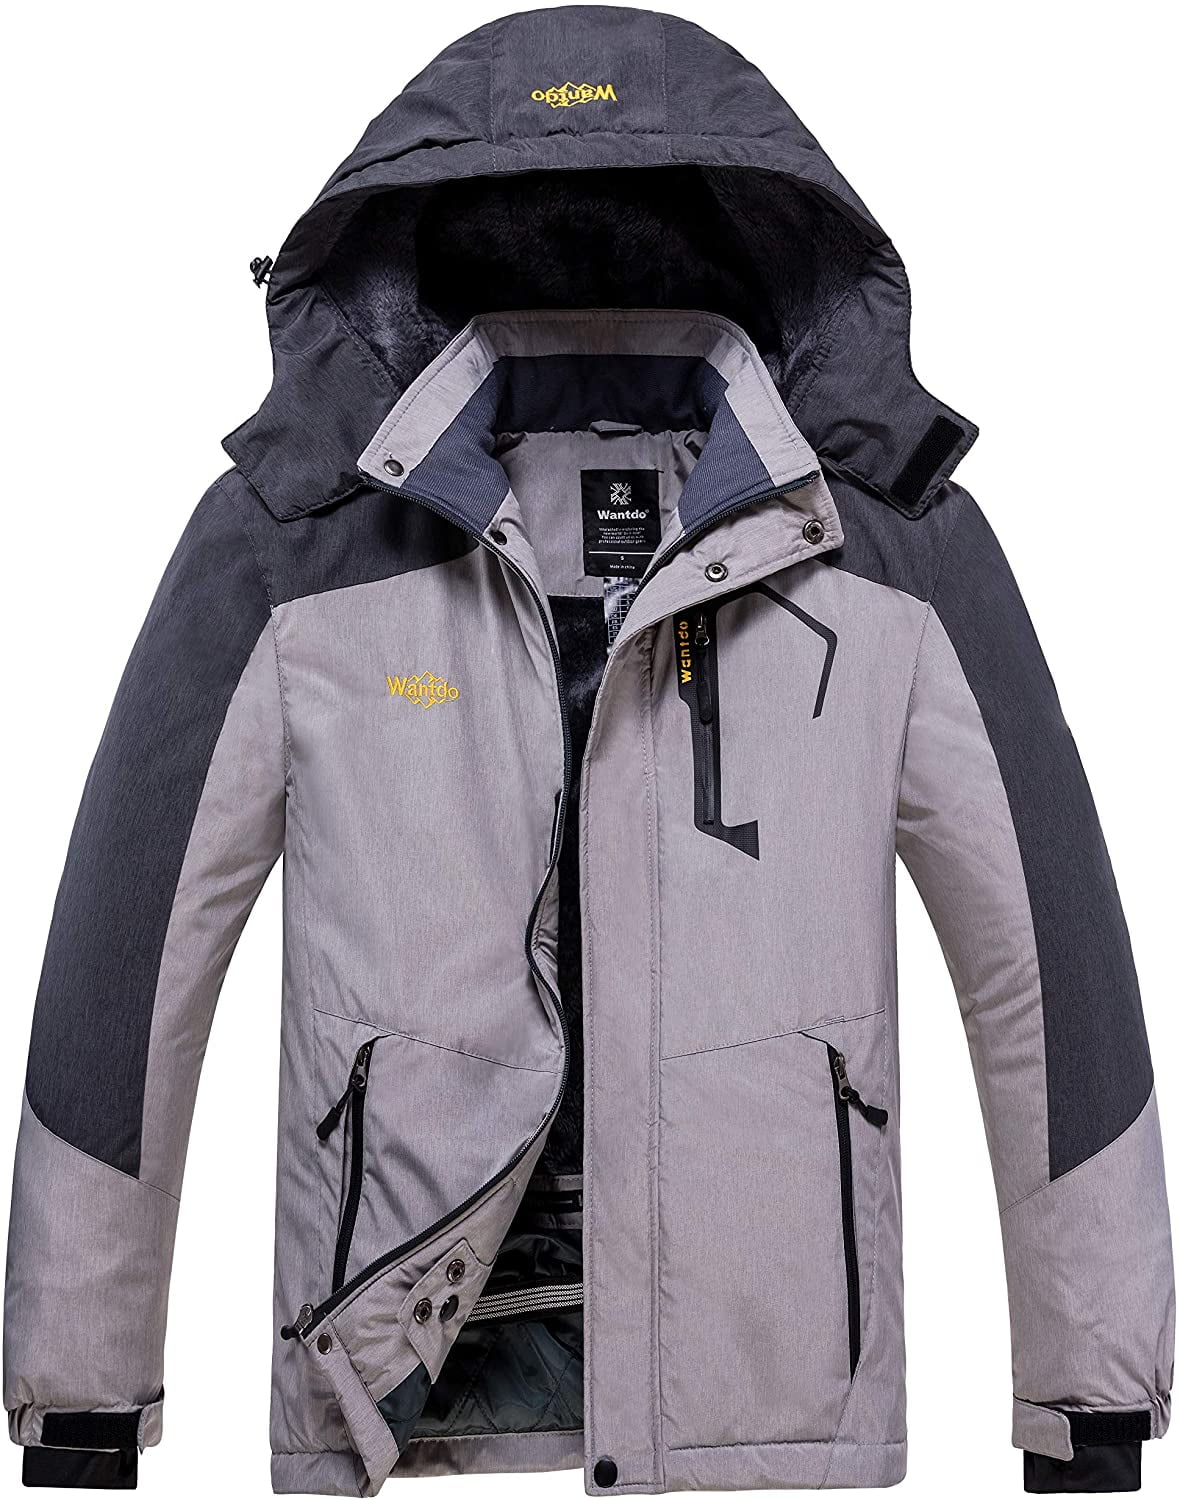 Wantdo Men's Mountain Waterproof Ski Jacket Windproof Rain Jacket Winter Warm Snow Coat 